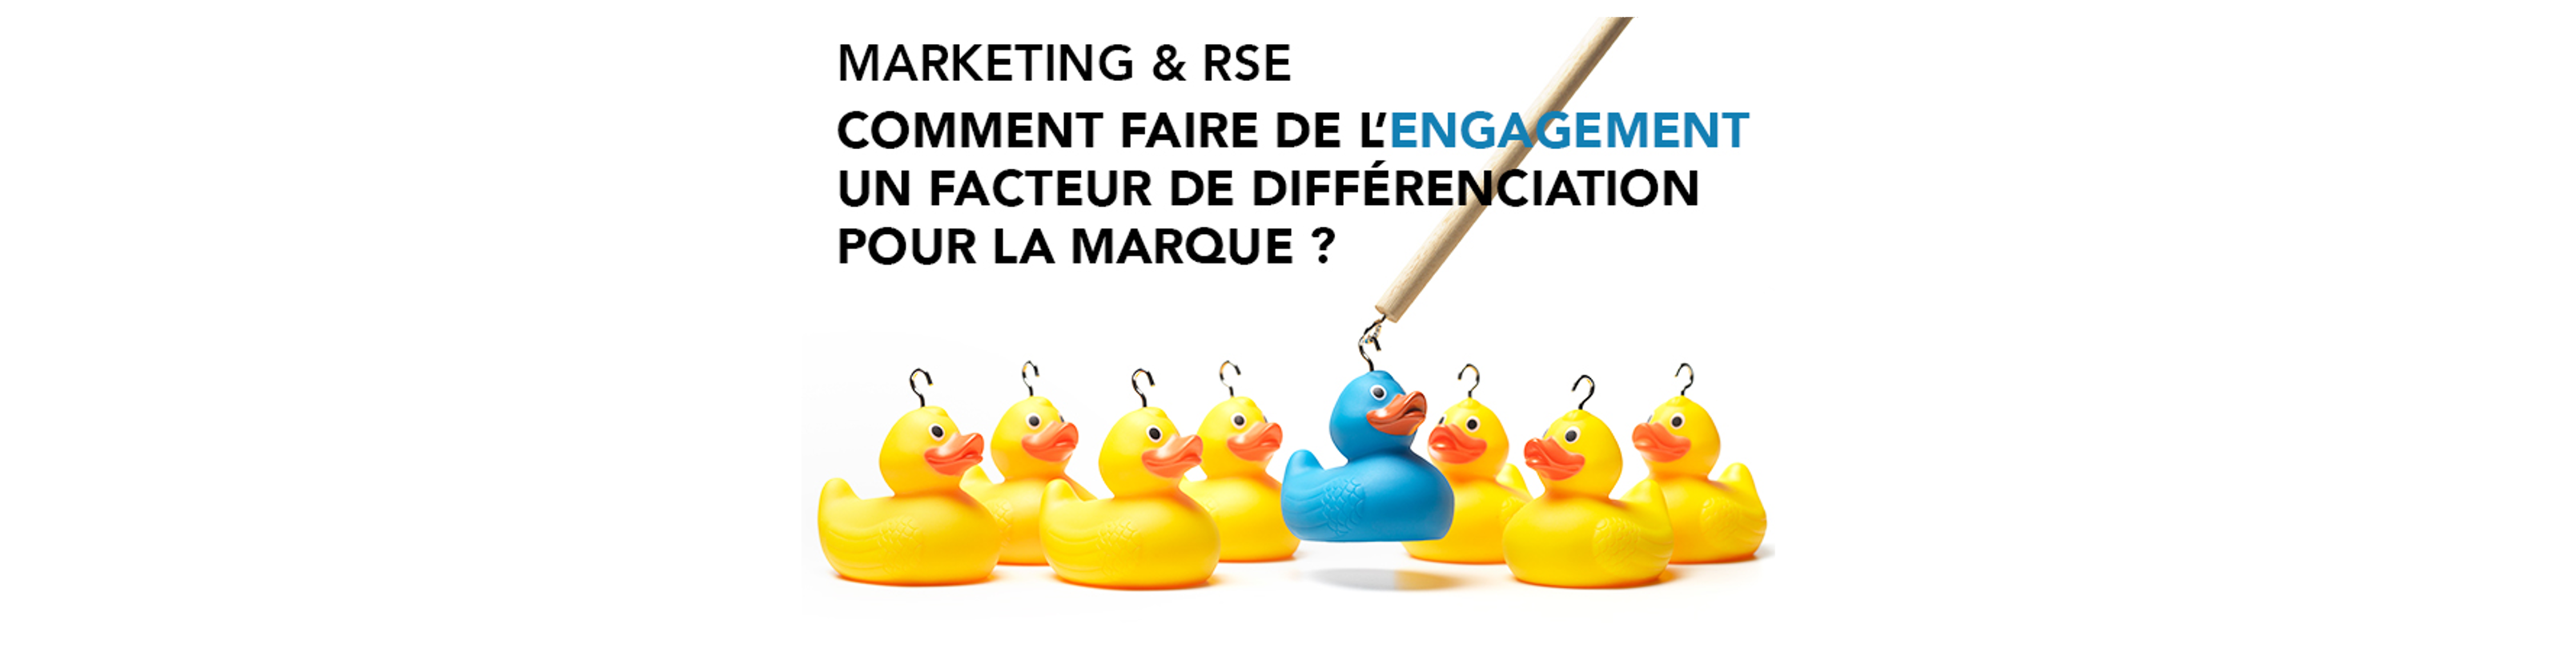 Marketing & RSE : Comment faire de l’engagement un facteur de différenciation pour la marque ?